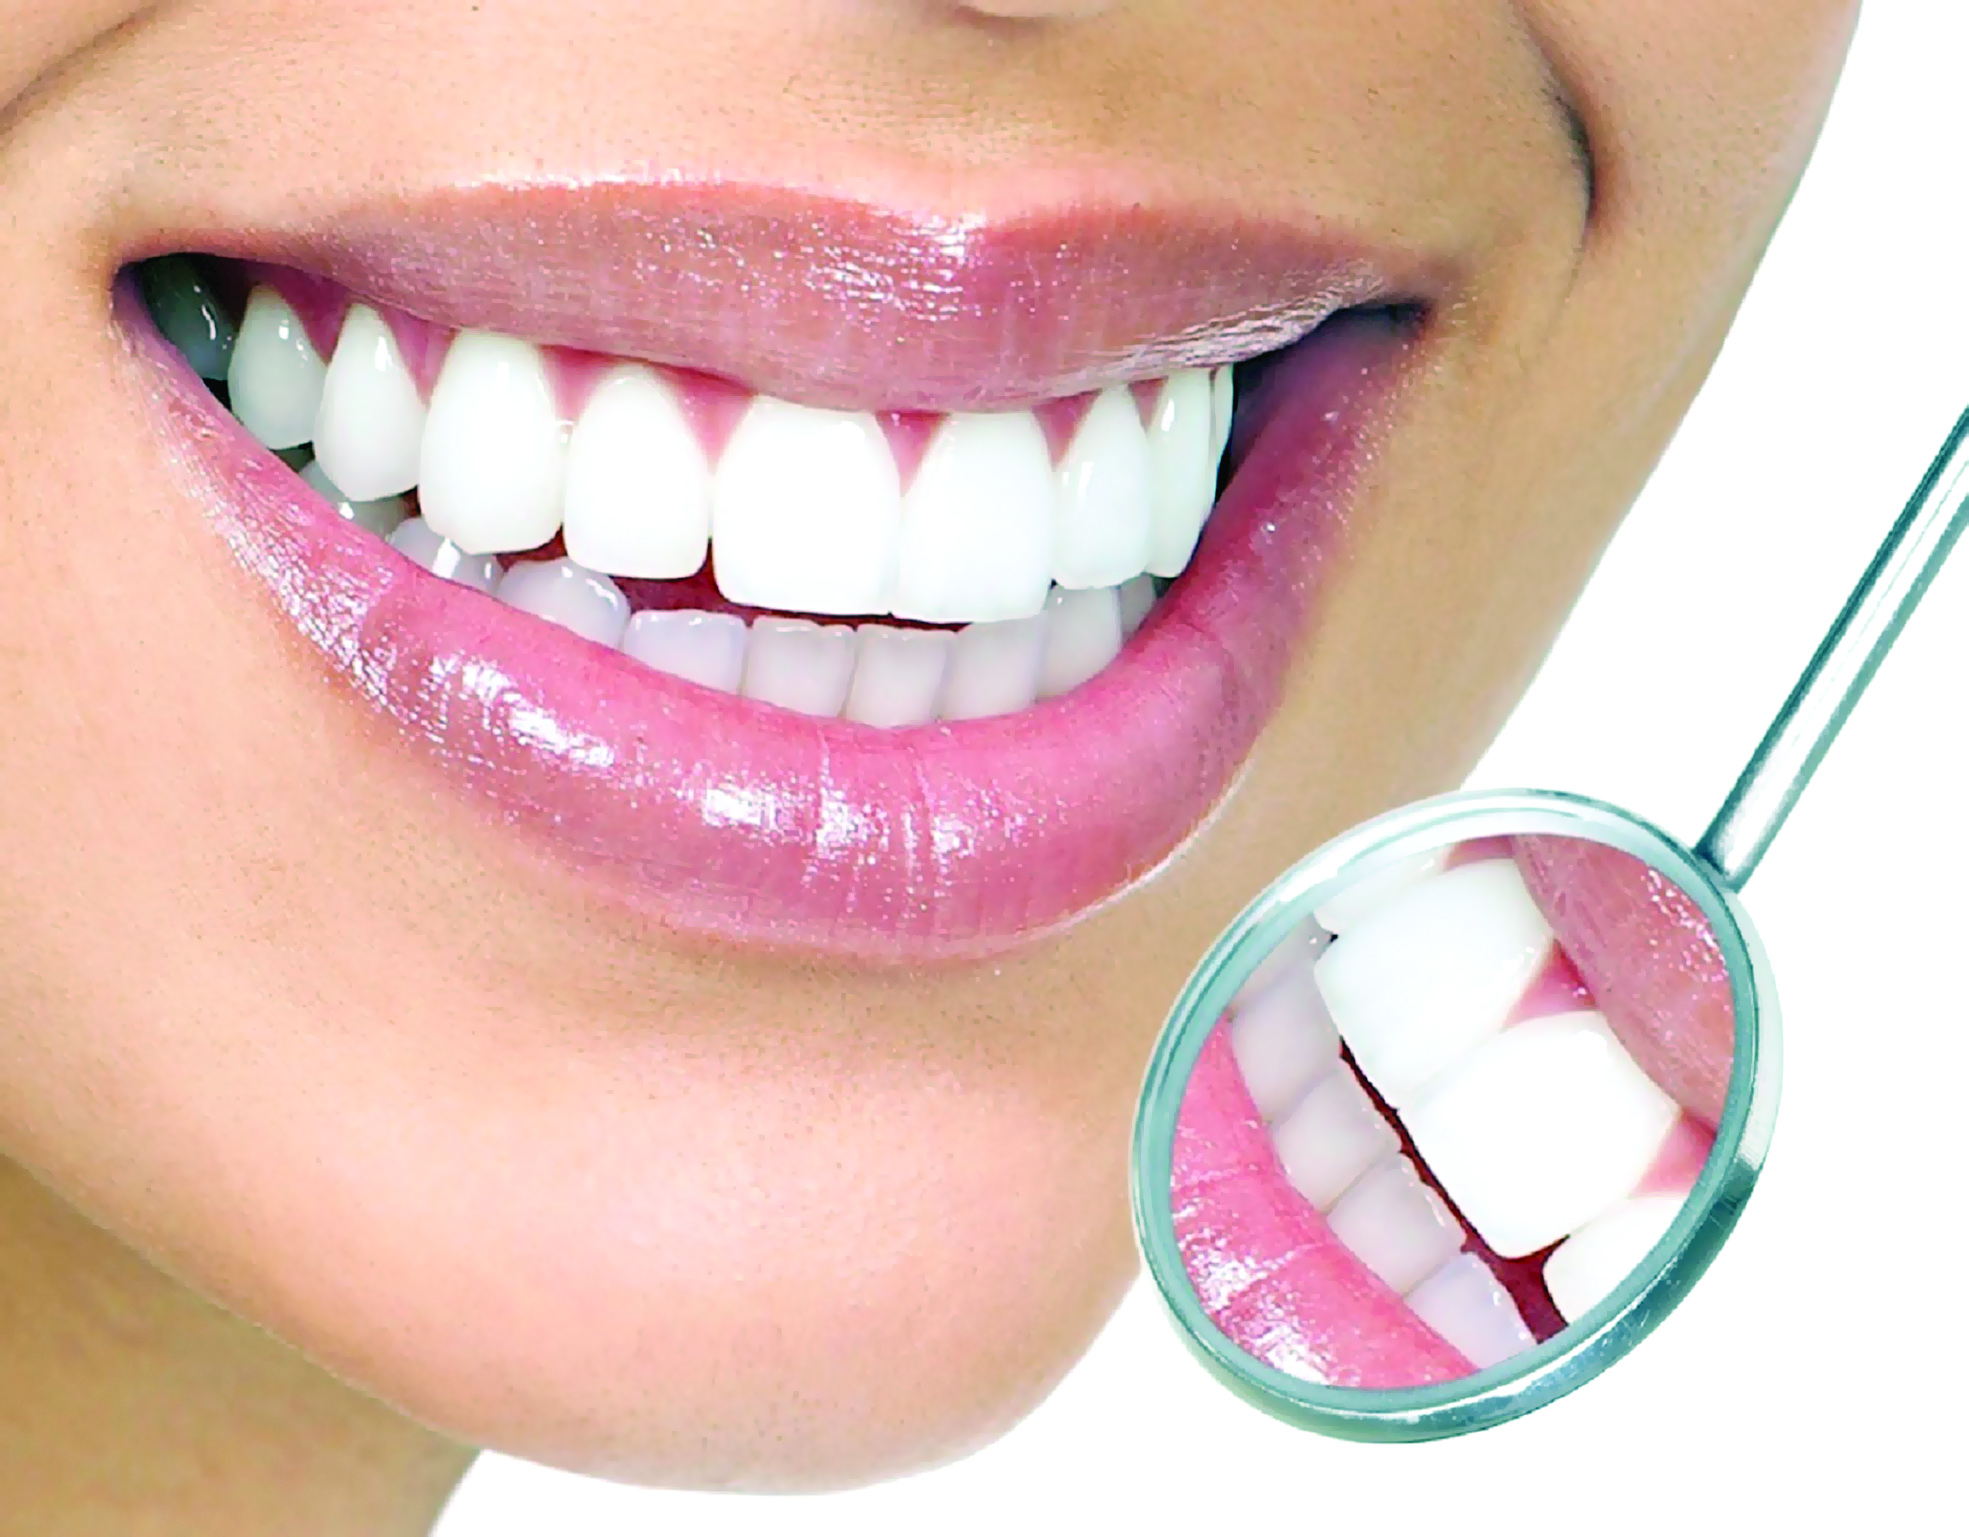 نصائح مهمة قبل إجراء جراحة زراعة الأسنان